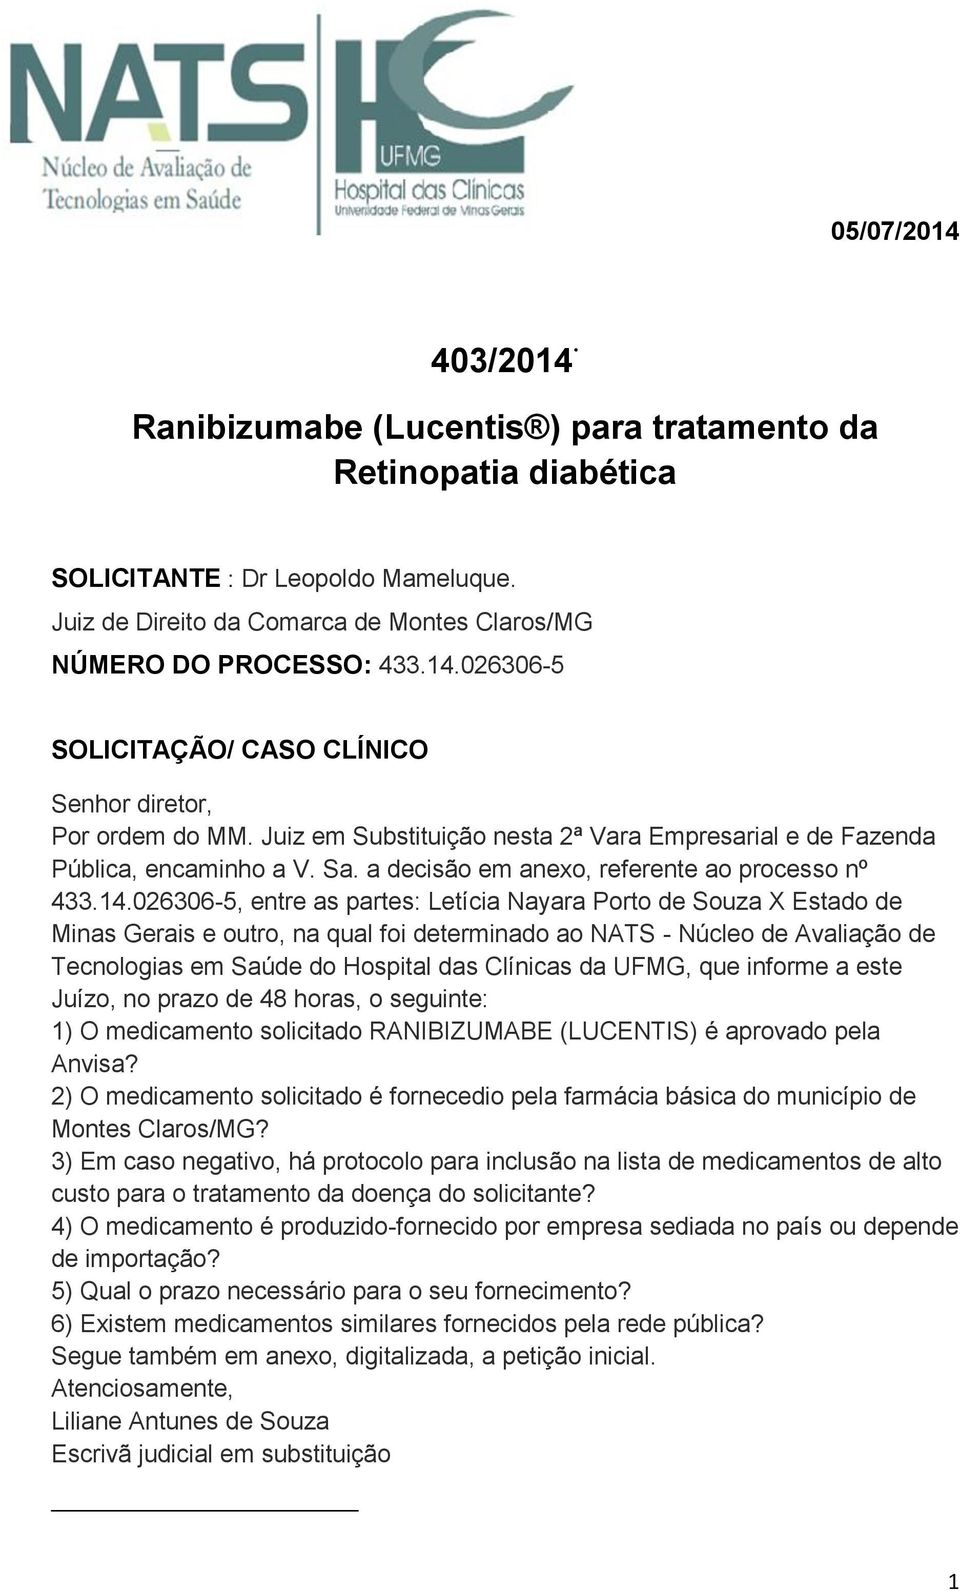 026306-5, entre as partes: Letícia Nayara Porto de Souza X Estado de Minas Gerais e outro, na qual foi determinado ao NATS - Núcleo de Avaliação de Tecnologias em Saúde do Hospital das Clínicas da